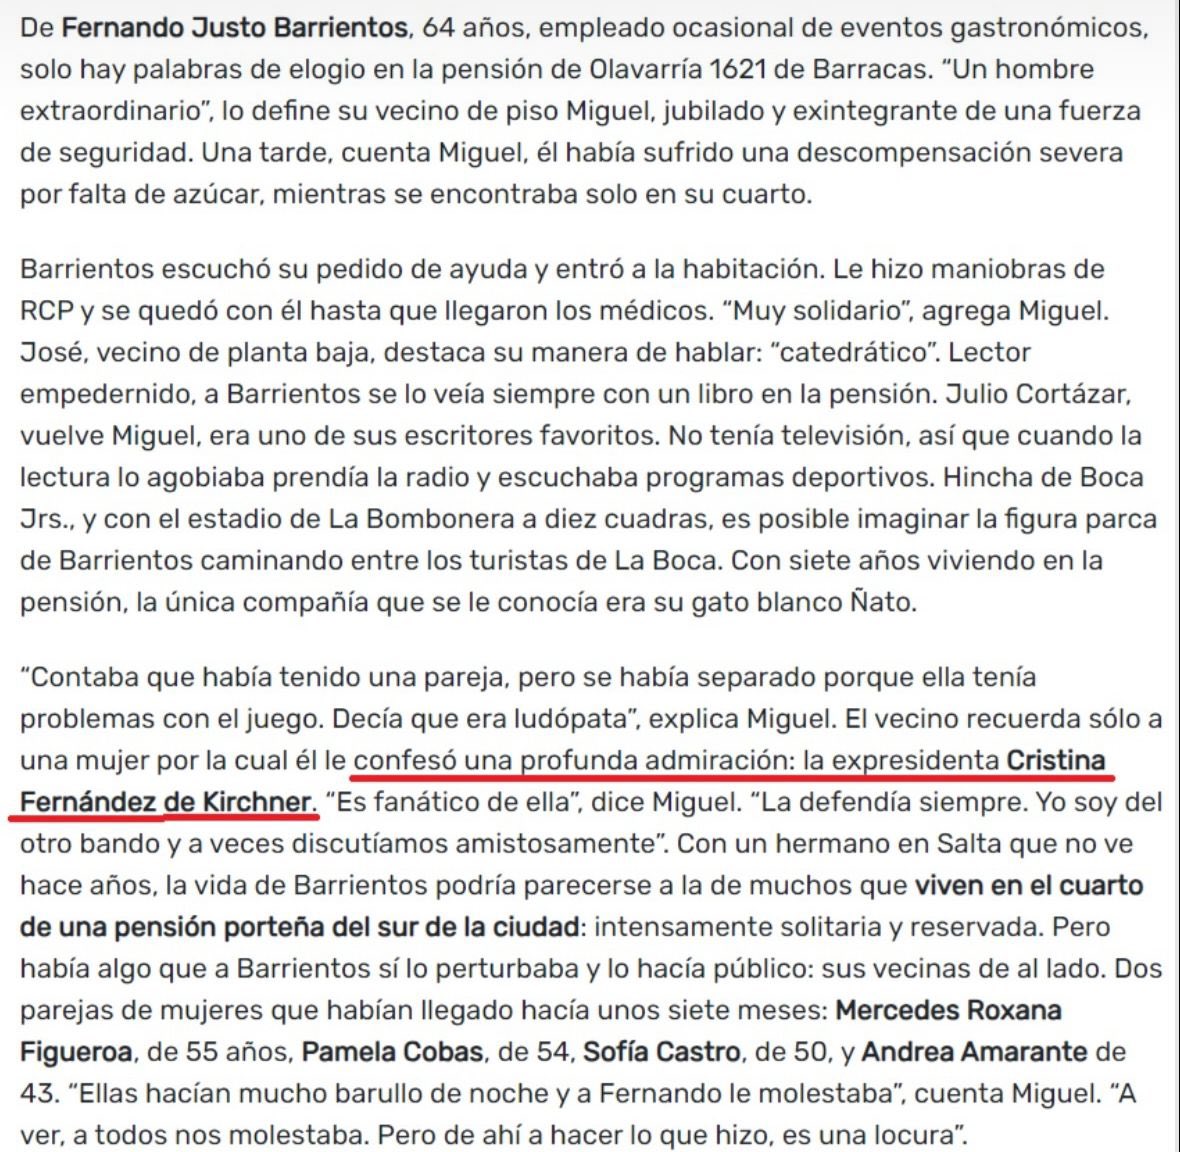 El asesino de las tres tortas no era militante de “la derecha y sus discursos de odio”, era admirador ferviente de Cristina Kirchner. ¿Y ahora?